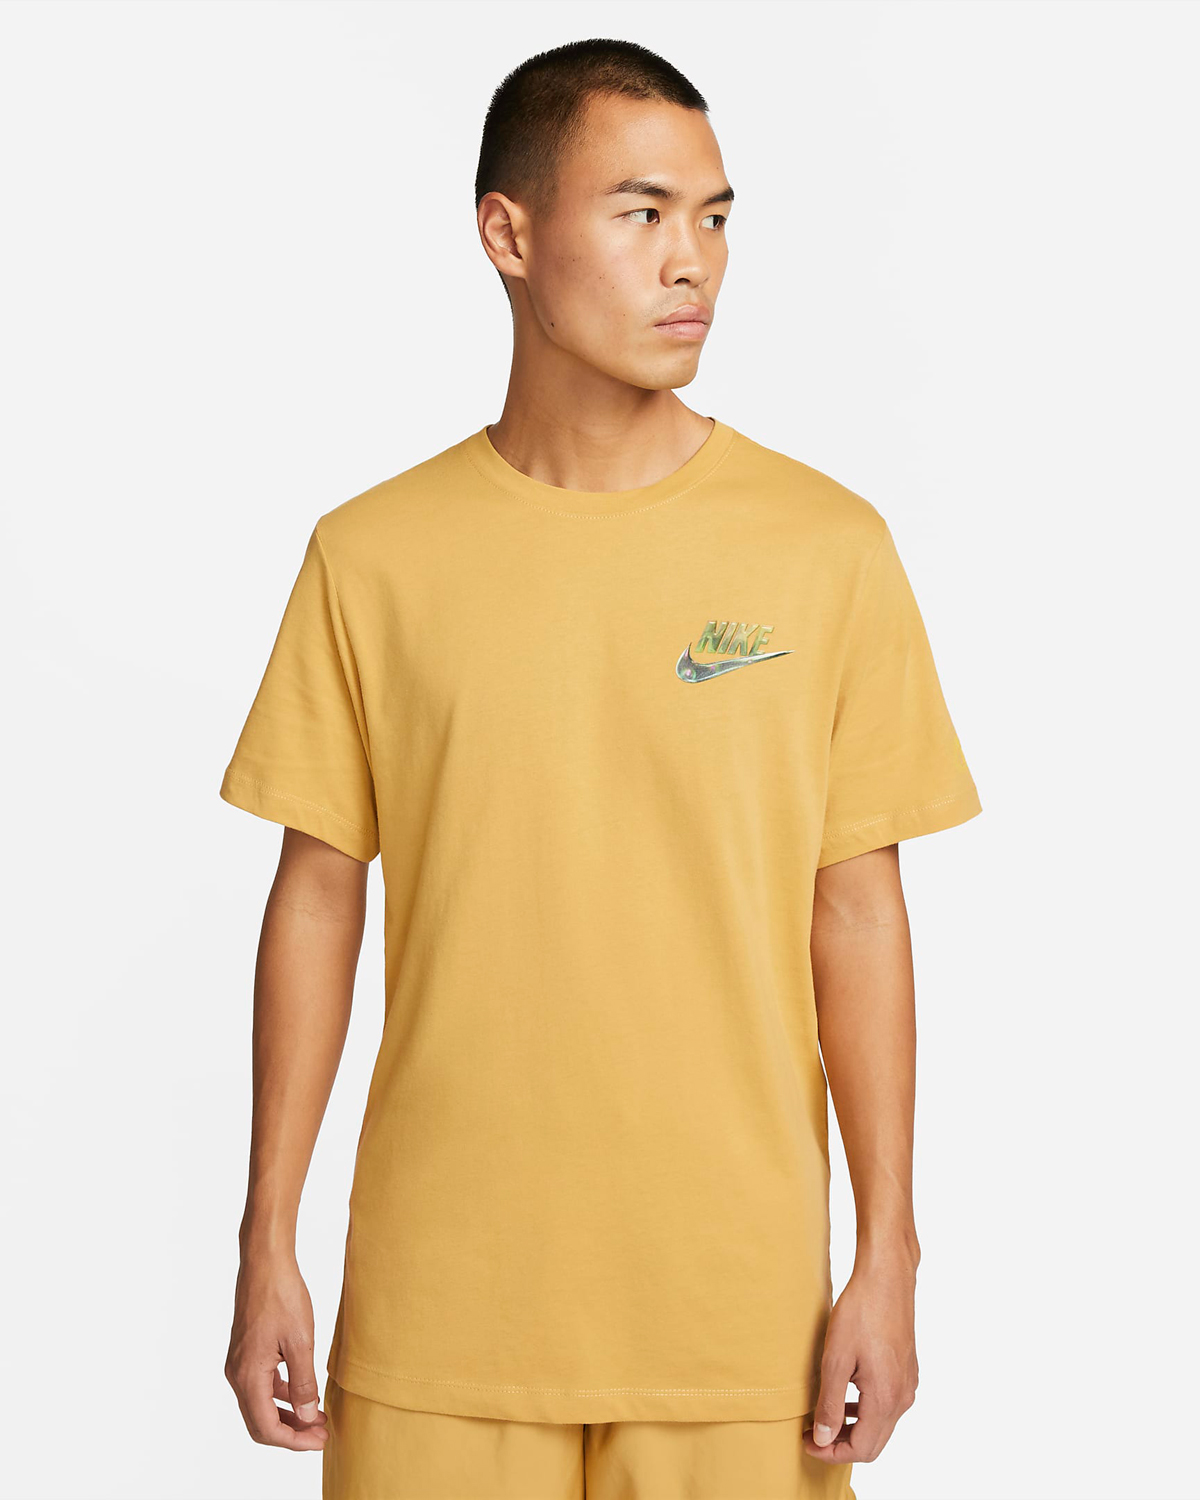 Nike-Air-T-Shirt-Wheat-Gold